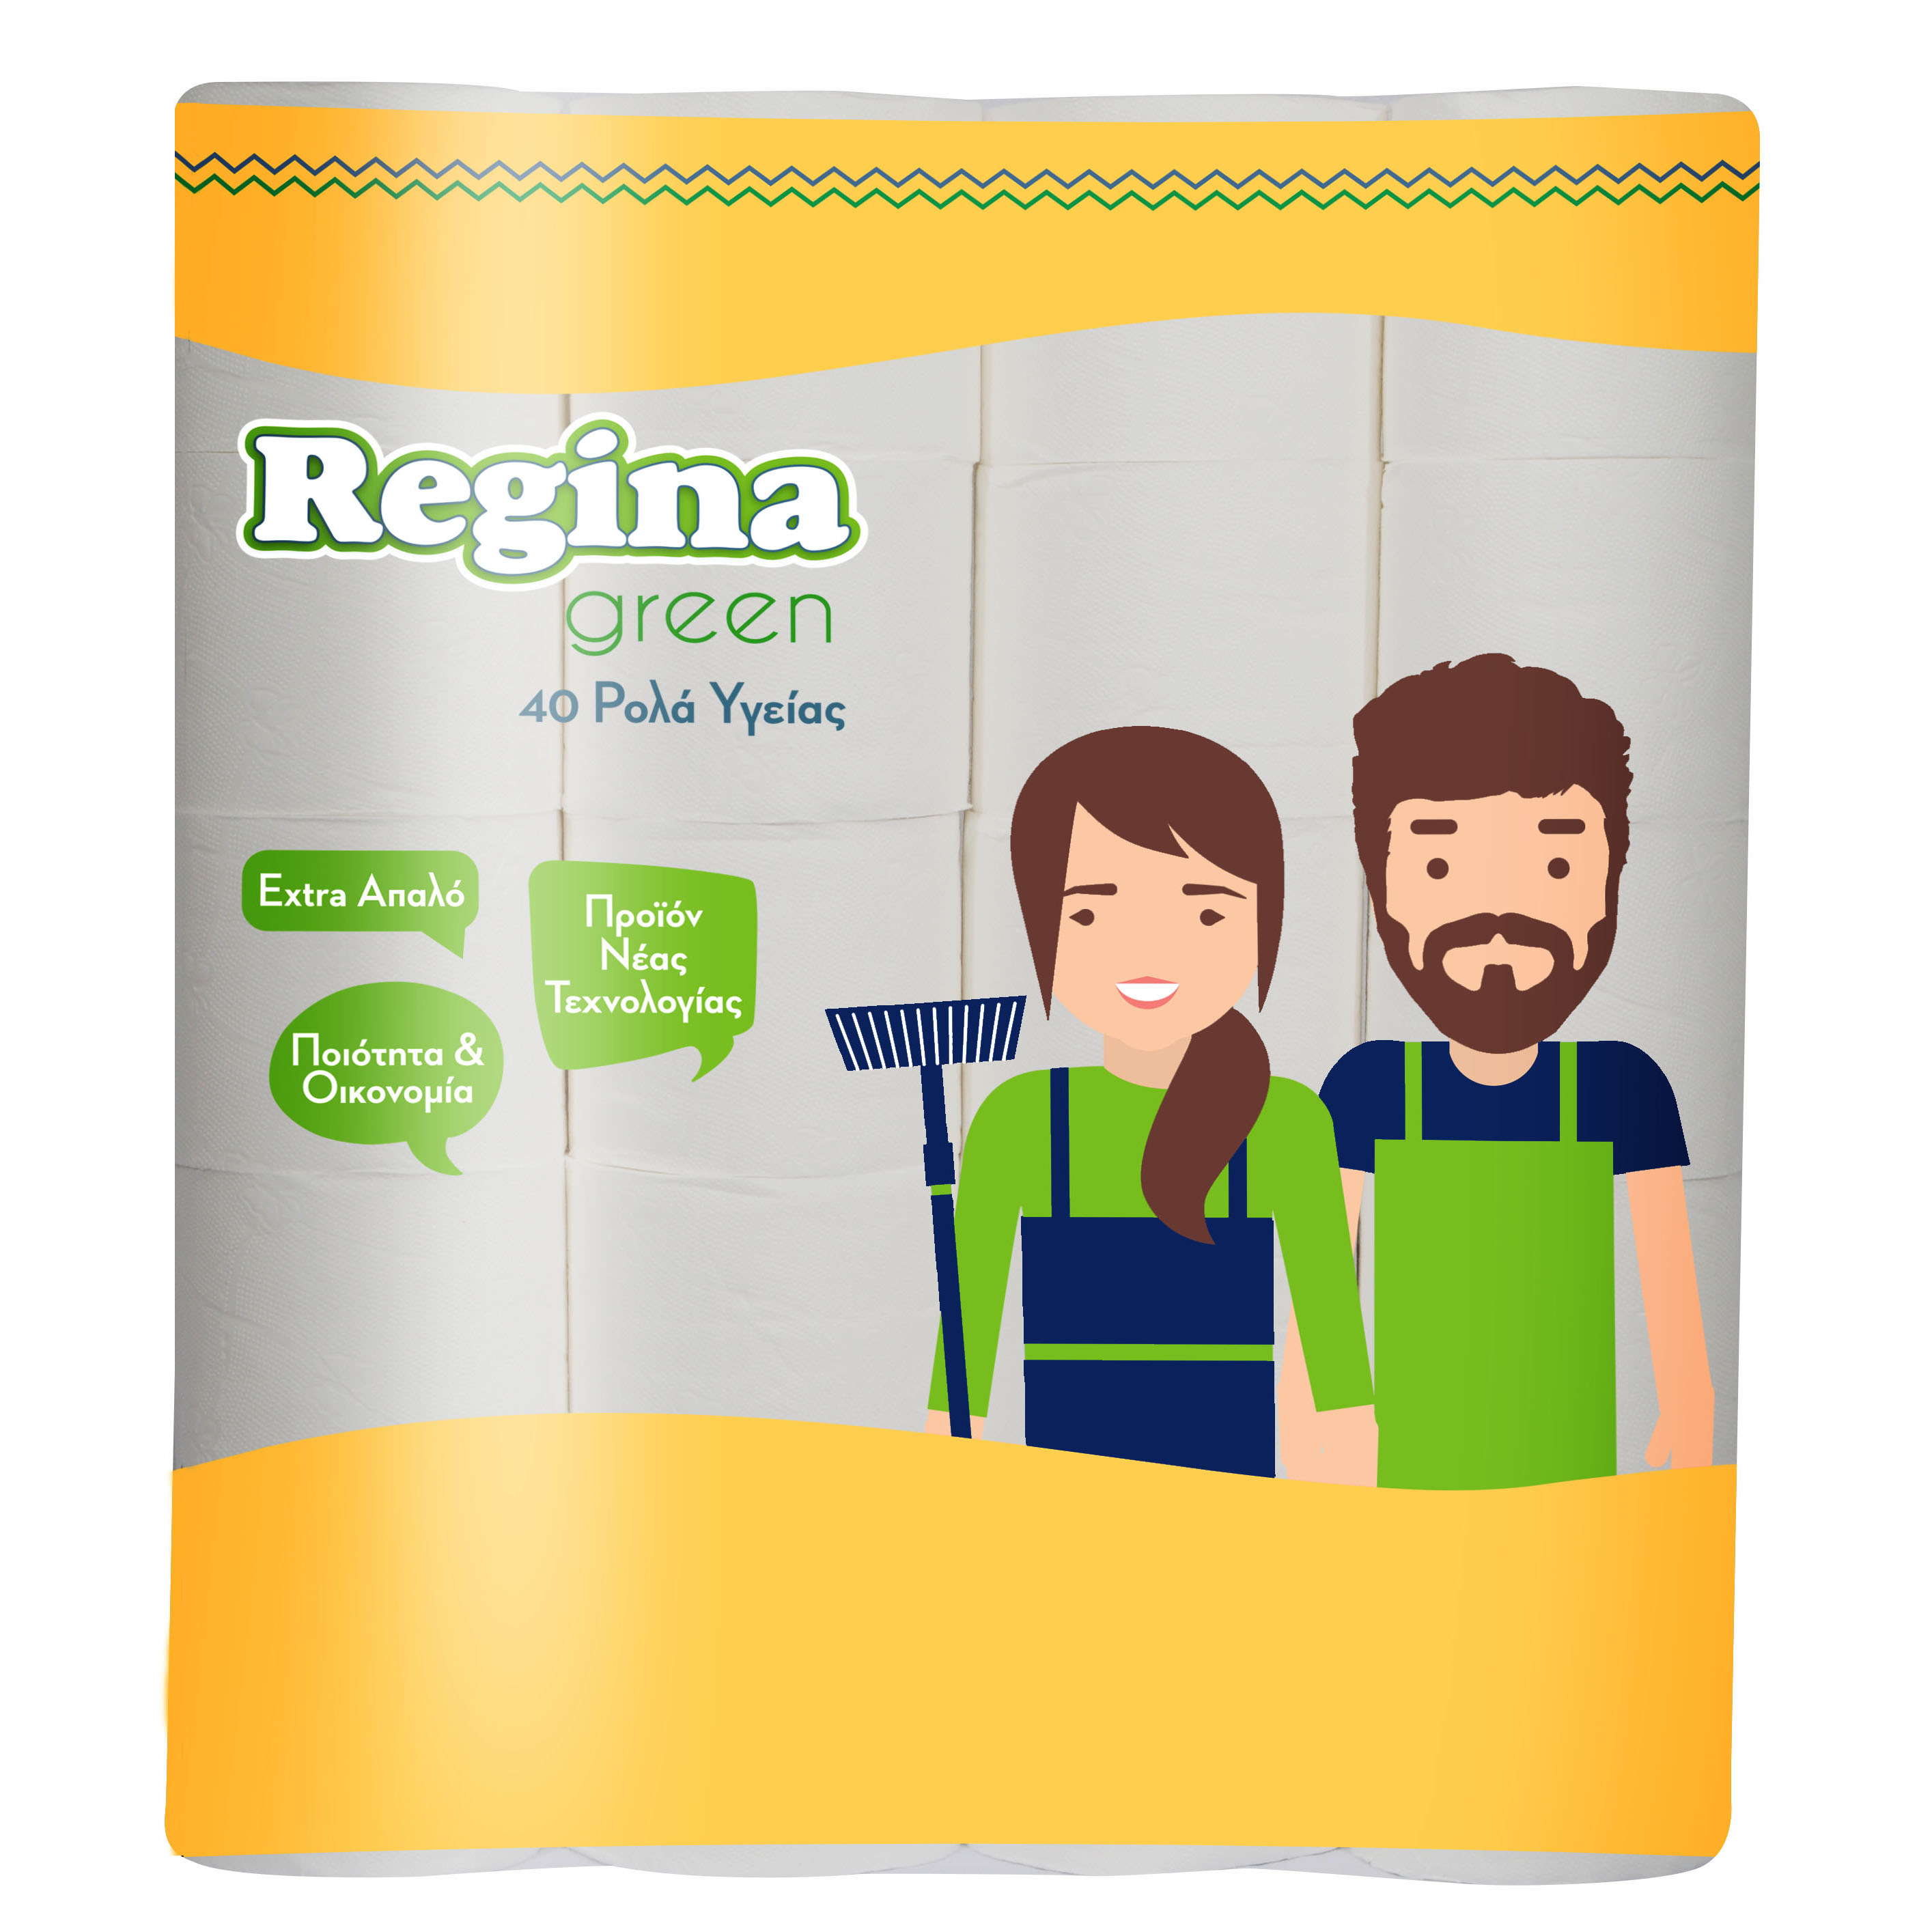 Regina Green 40 Ρολά Υγείας